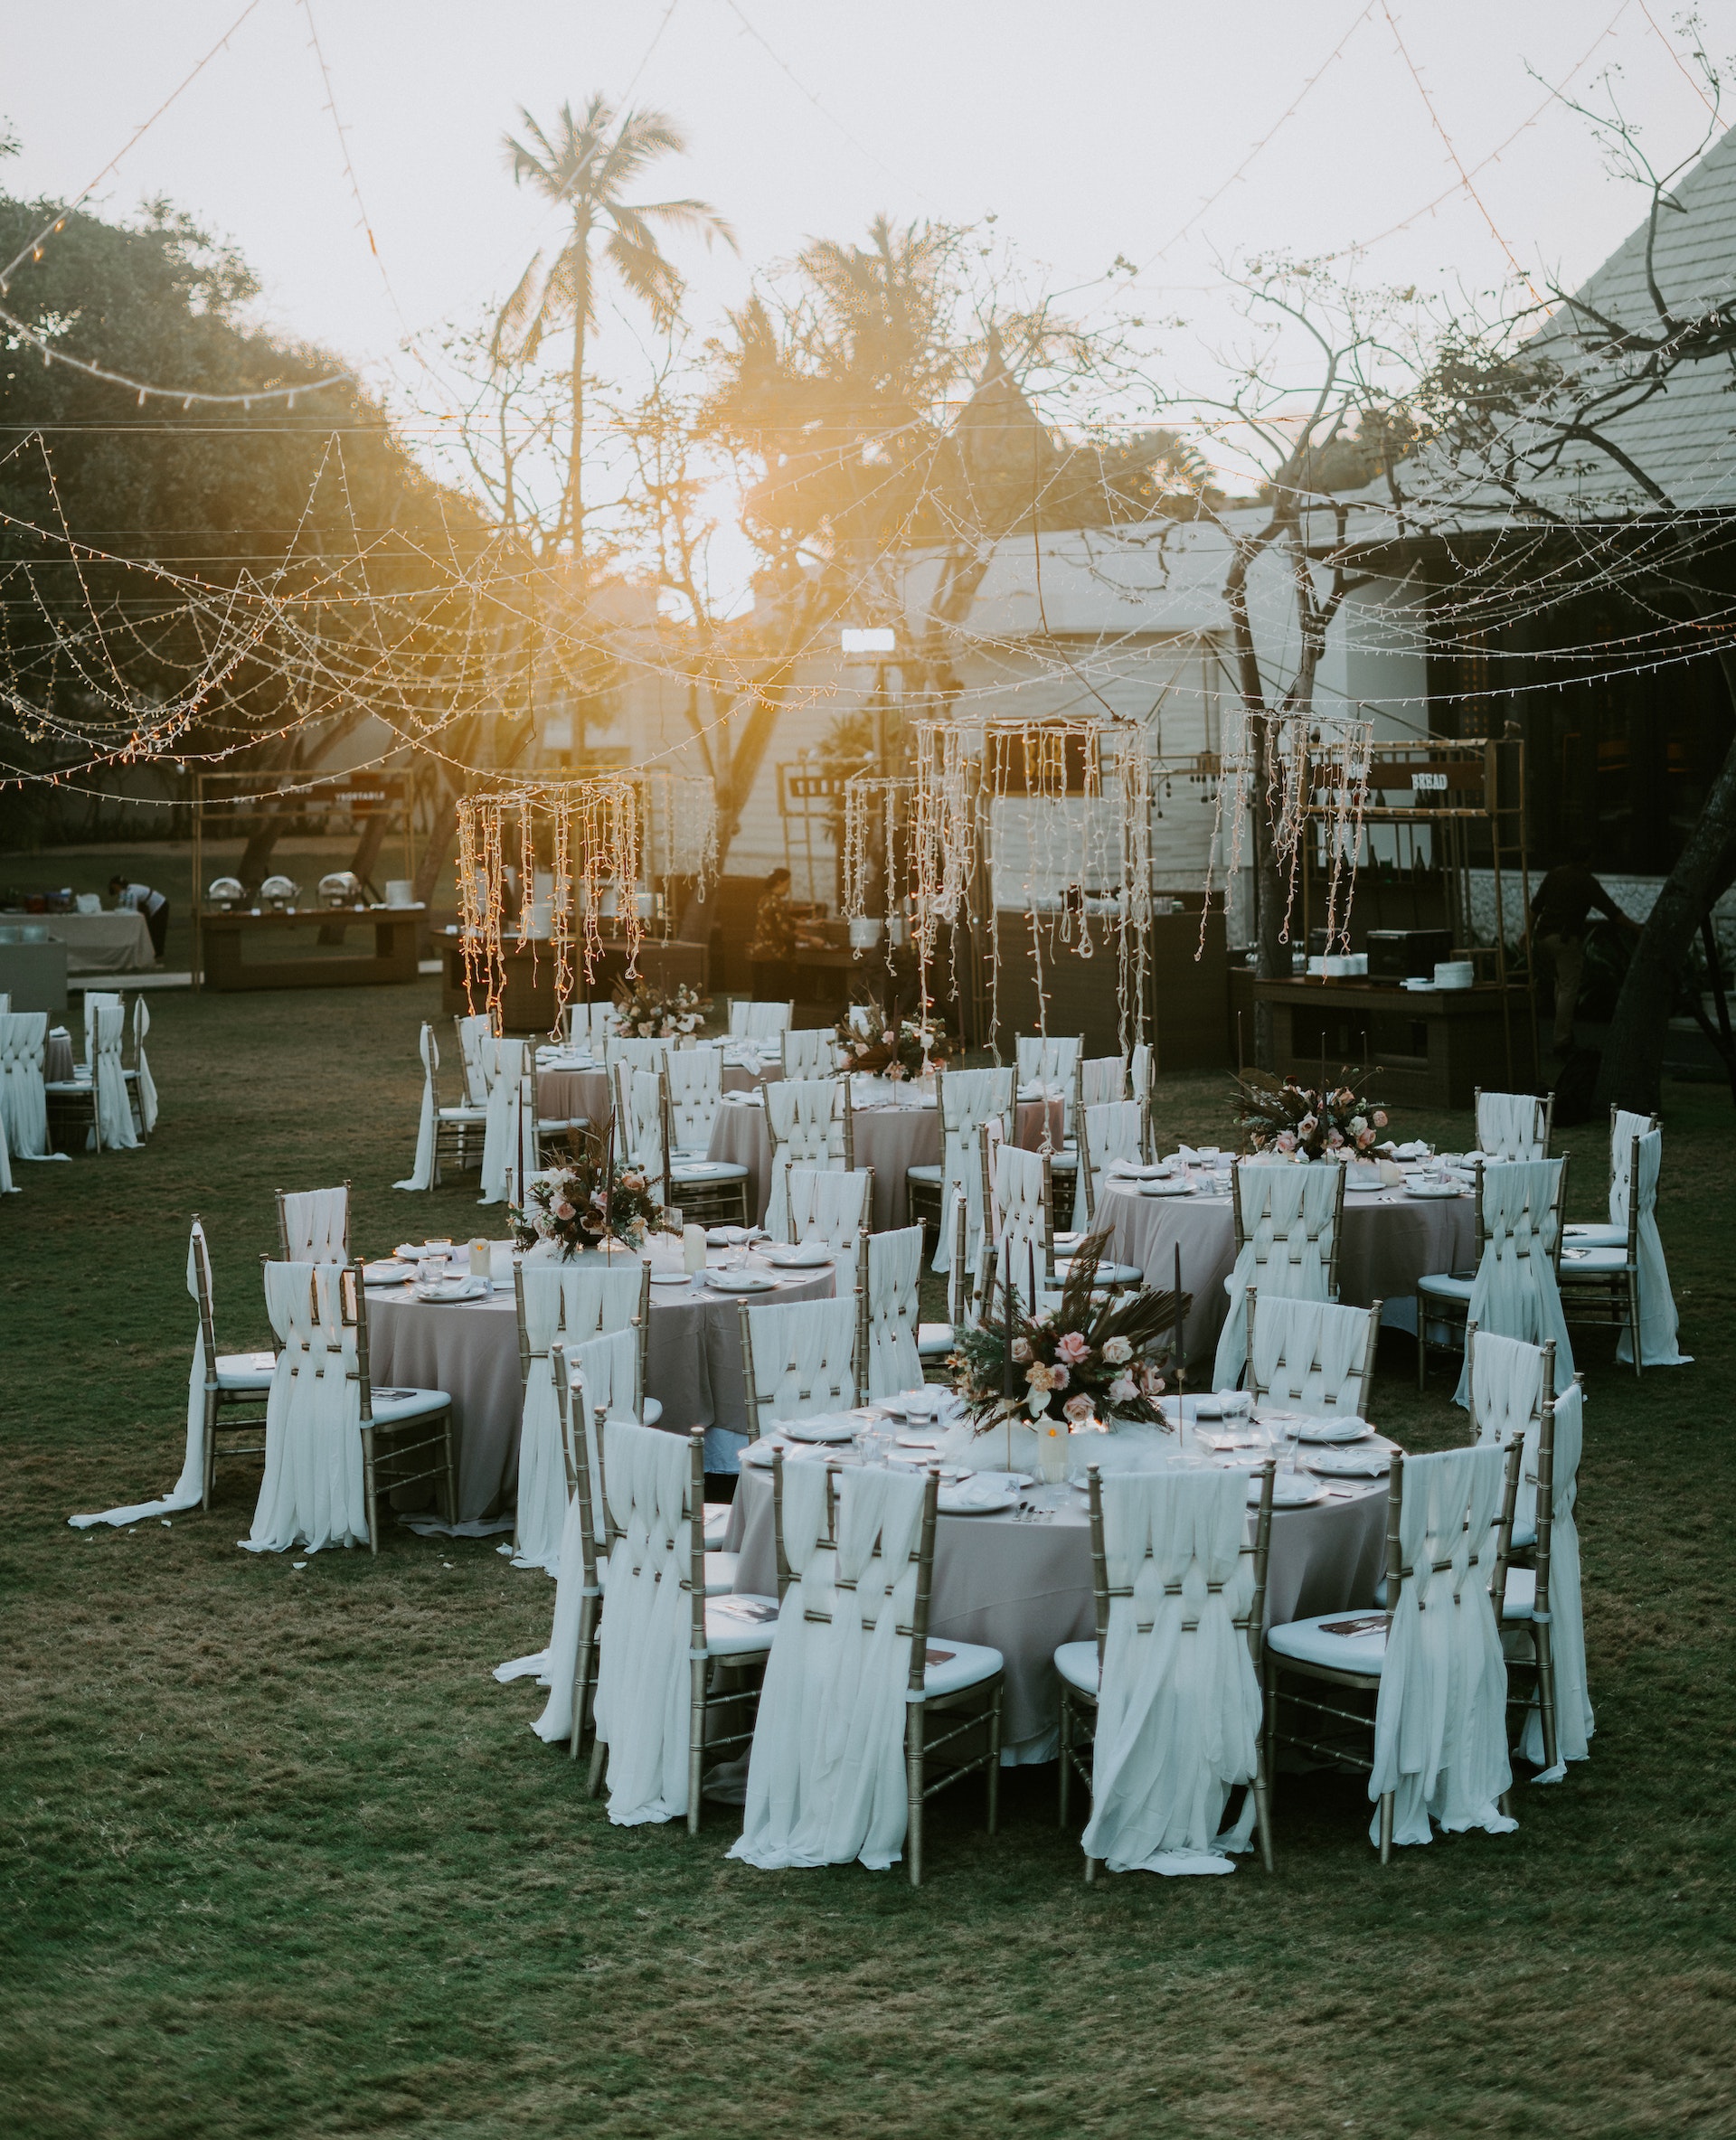 An outdoor wedding venue | Source: Pexels